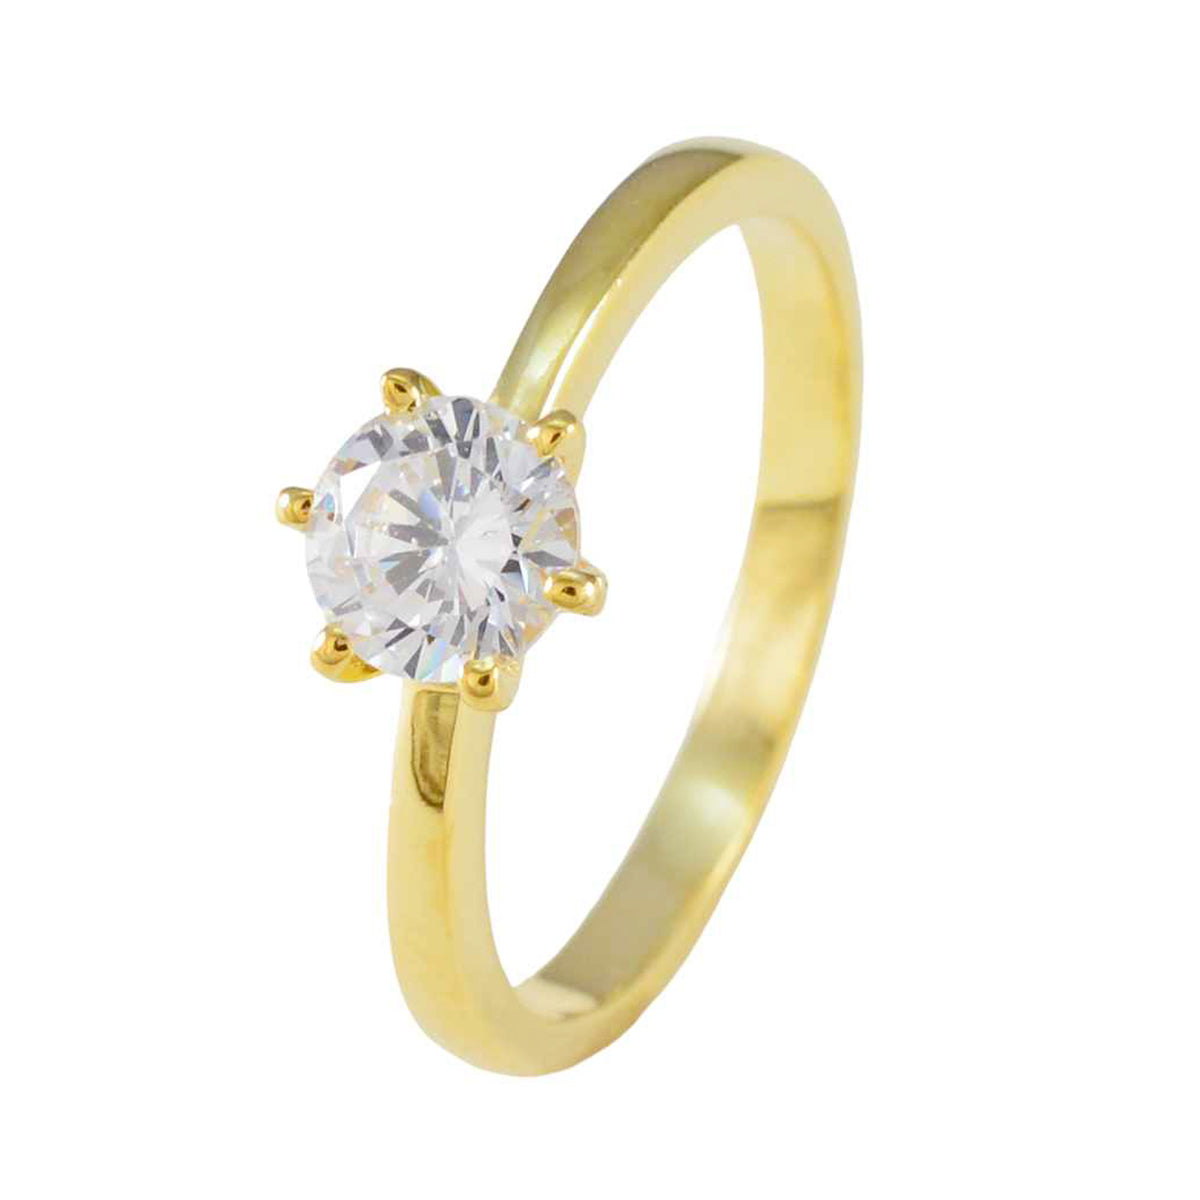 Precioso anillo de plata riyo con anillo con engaste de punta de forma redonda de piedra cz blanca chapado en oro amarillo